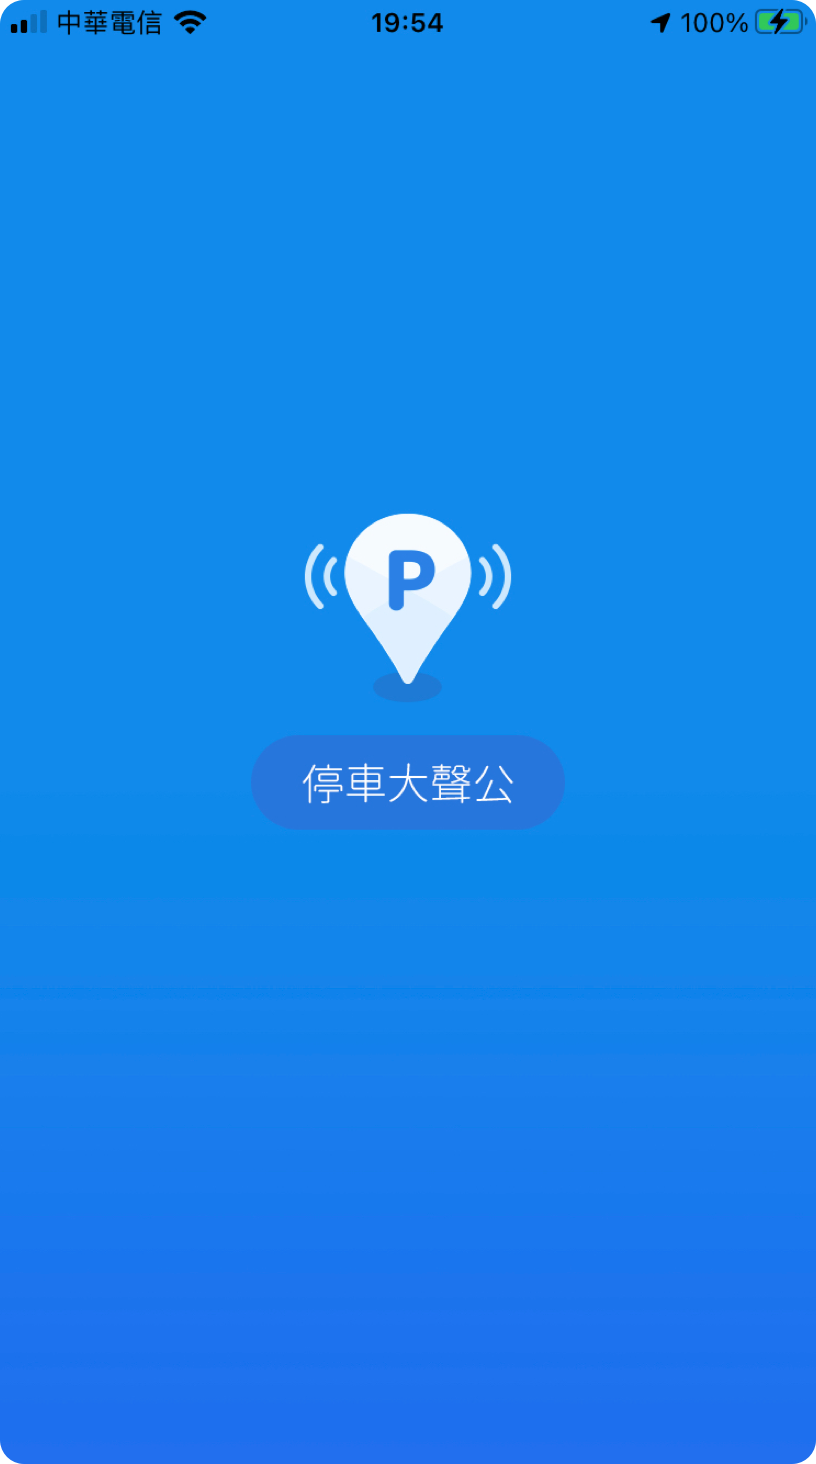 ParkingLot App-1@3x.png